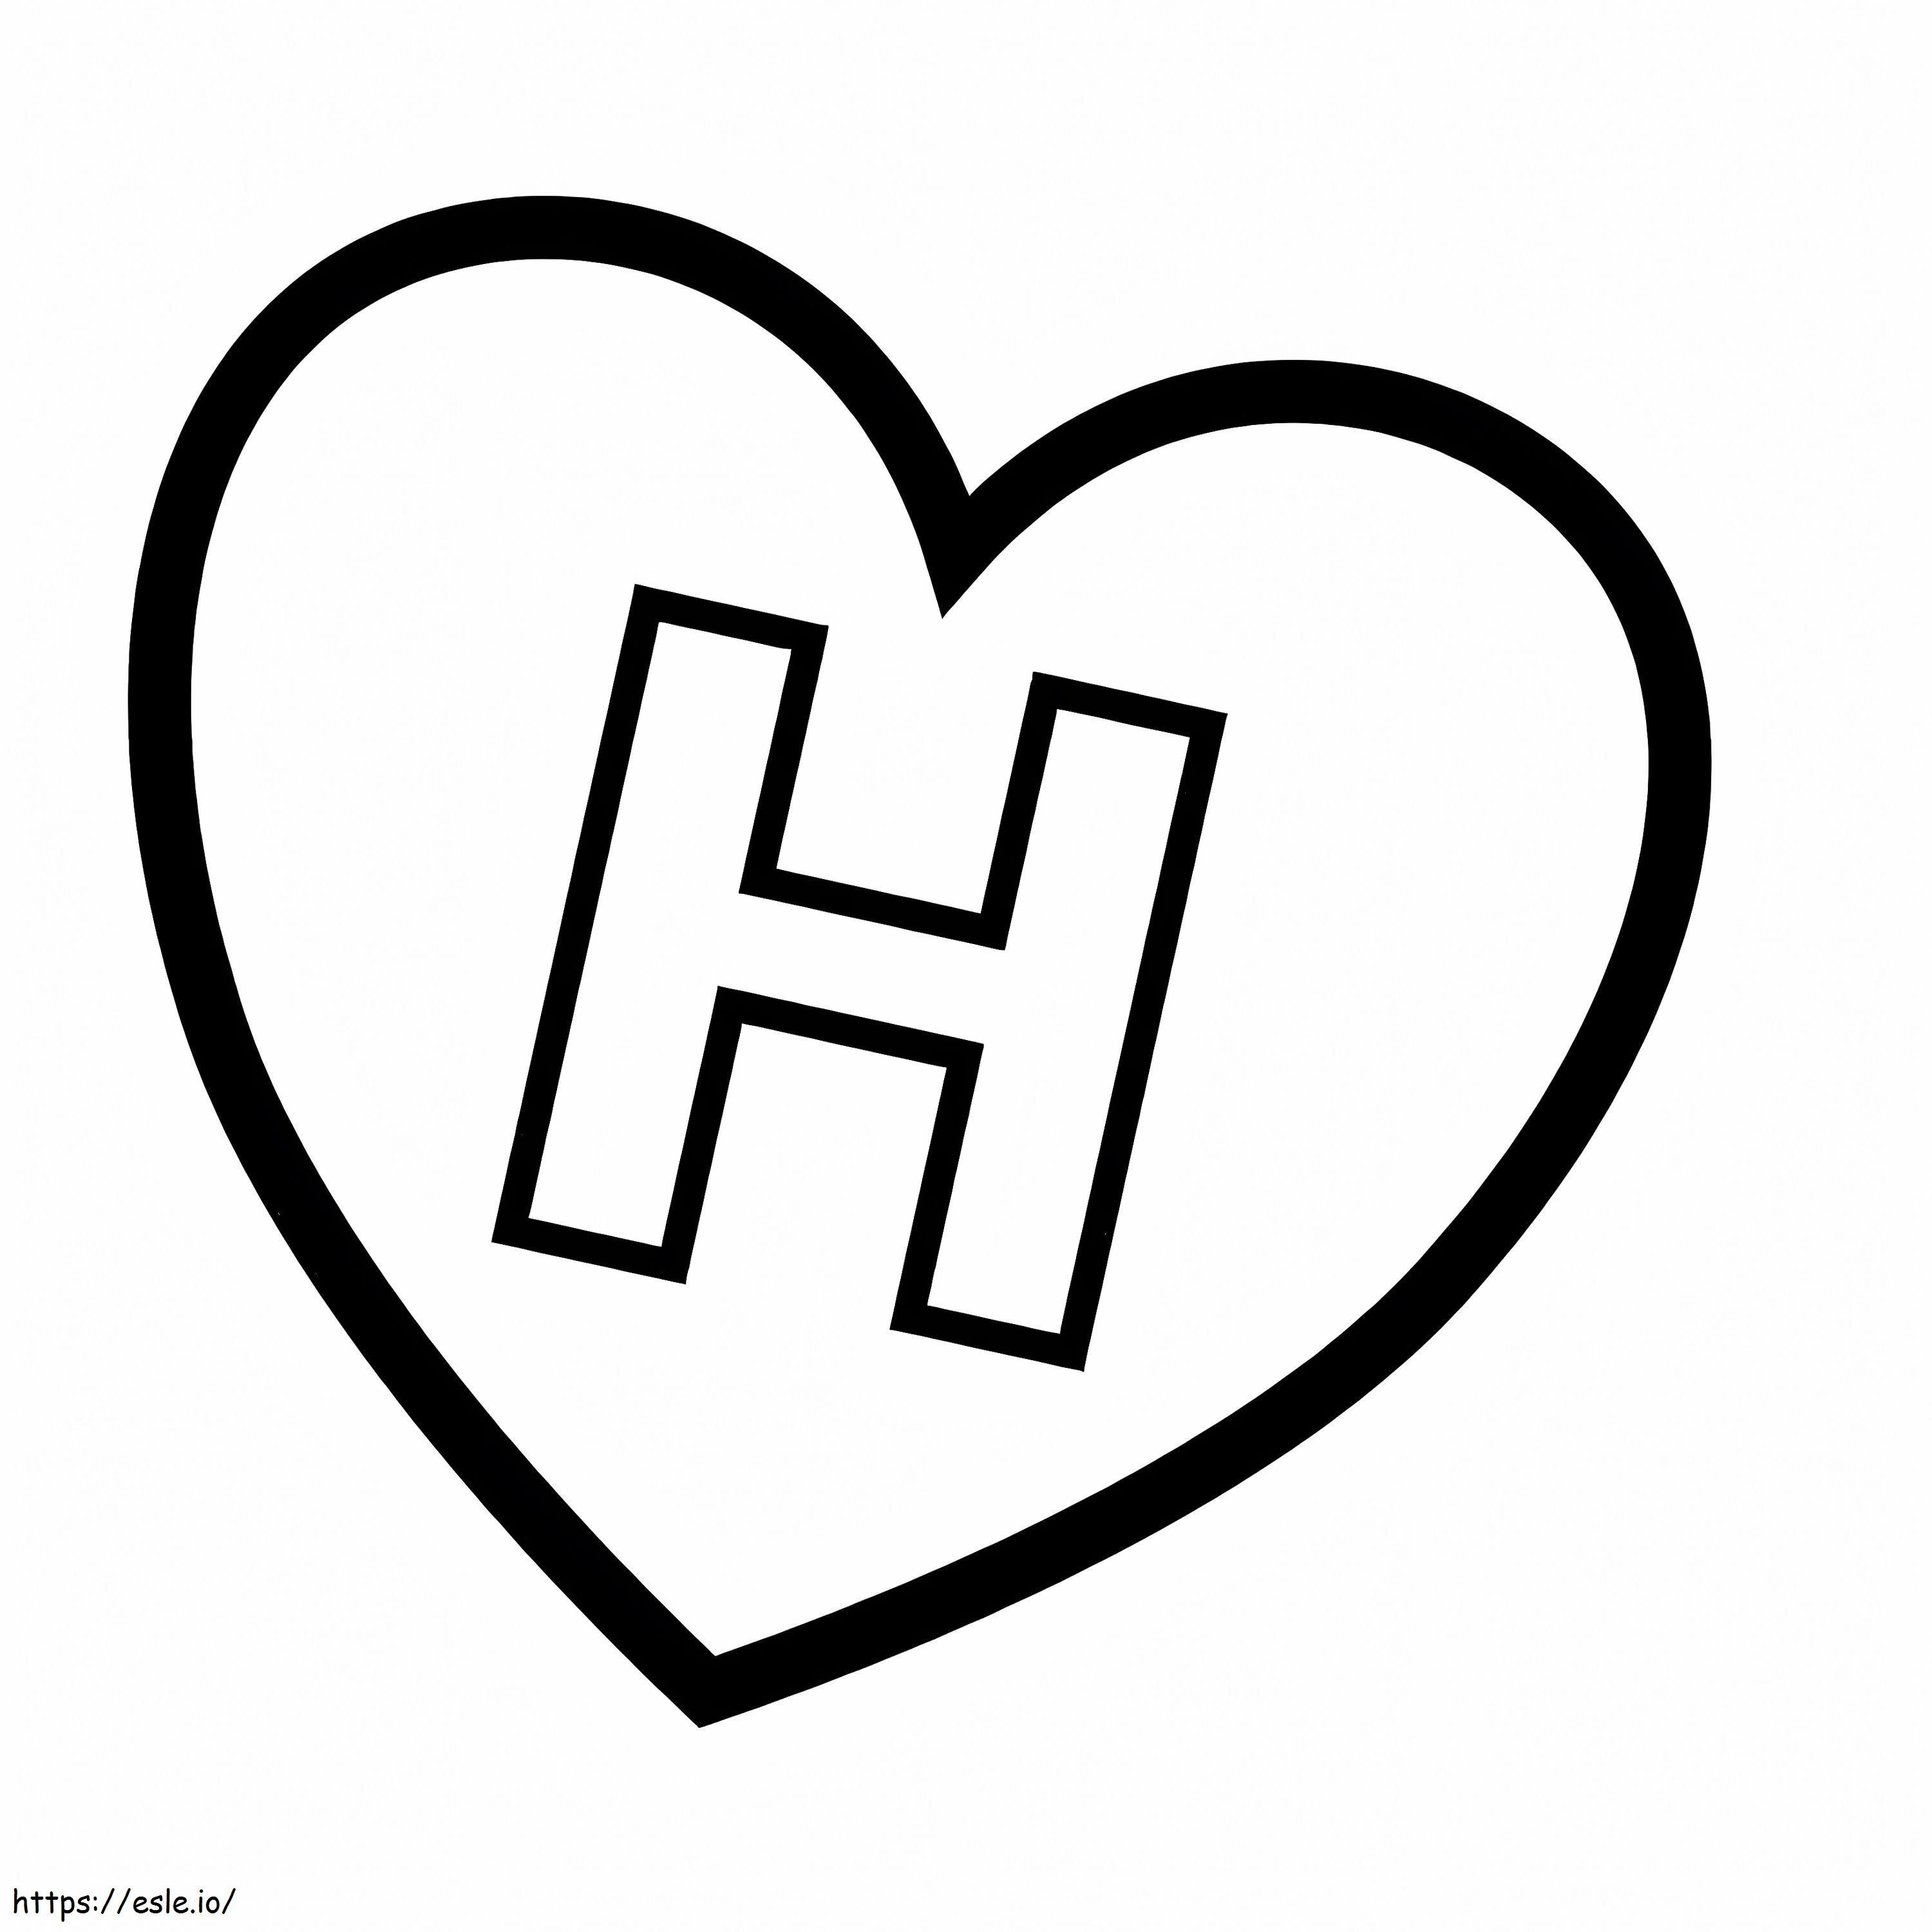 Lettera H nel cuore da colorare